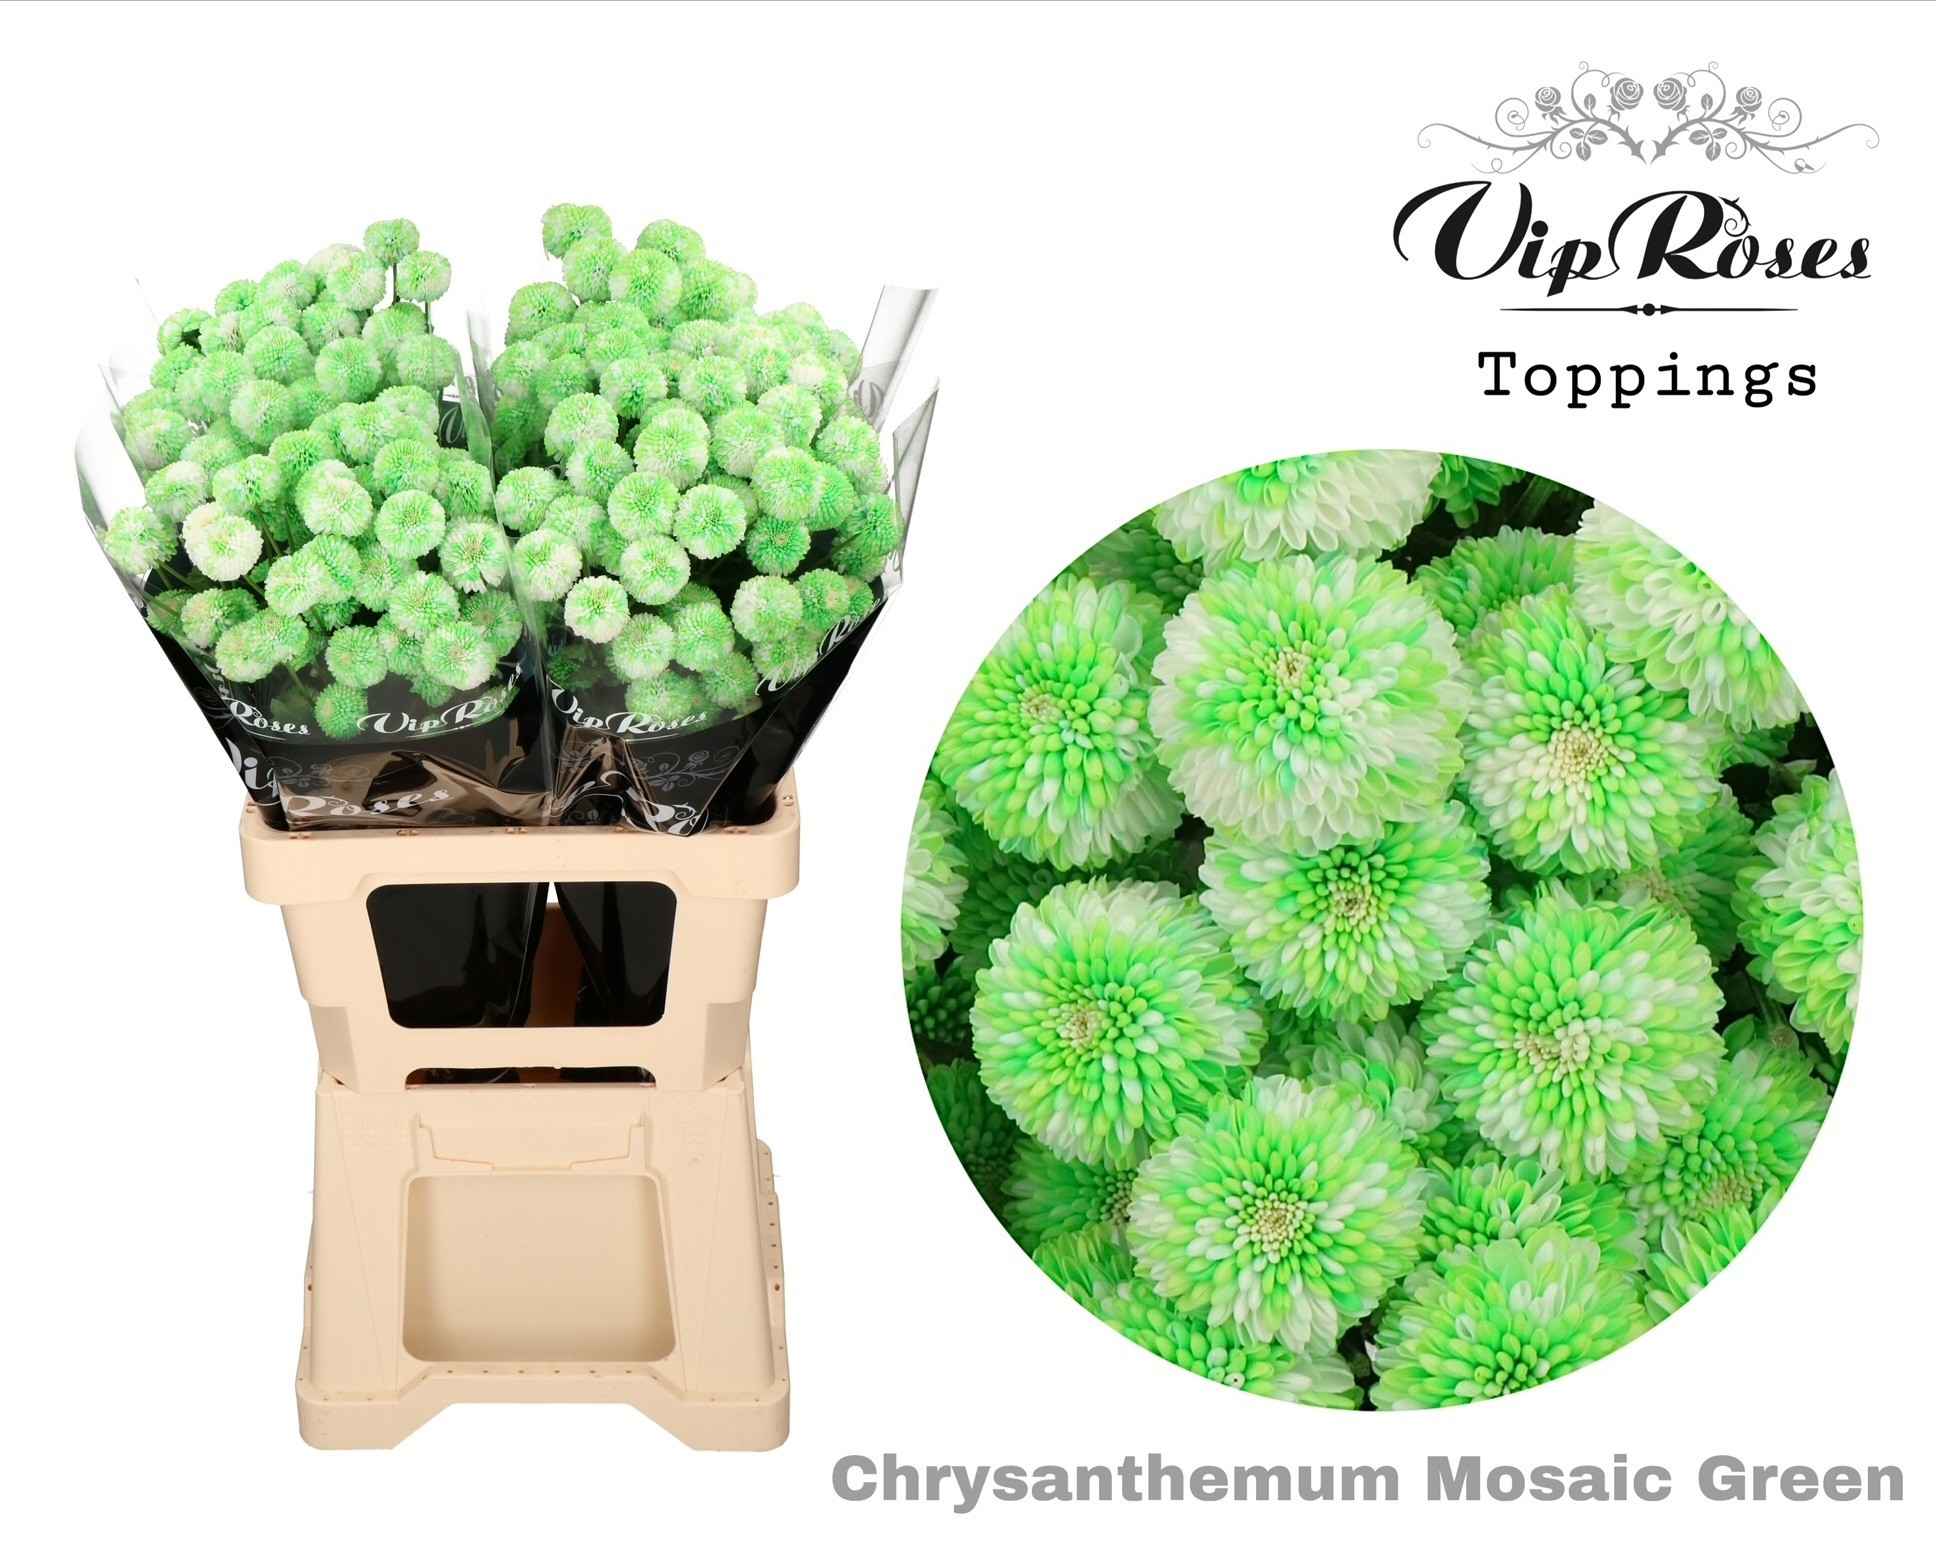 Срезанные цветы оптом Chrys sp paint mosaic green от 20шт из Голландии с доставкой по России